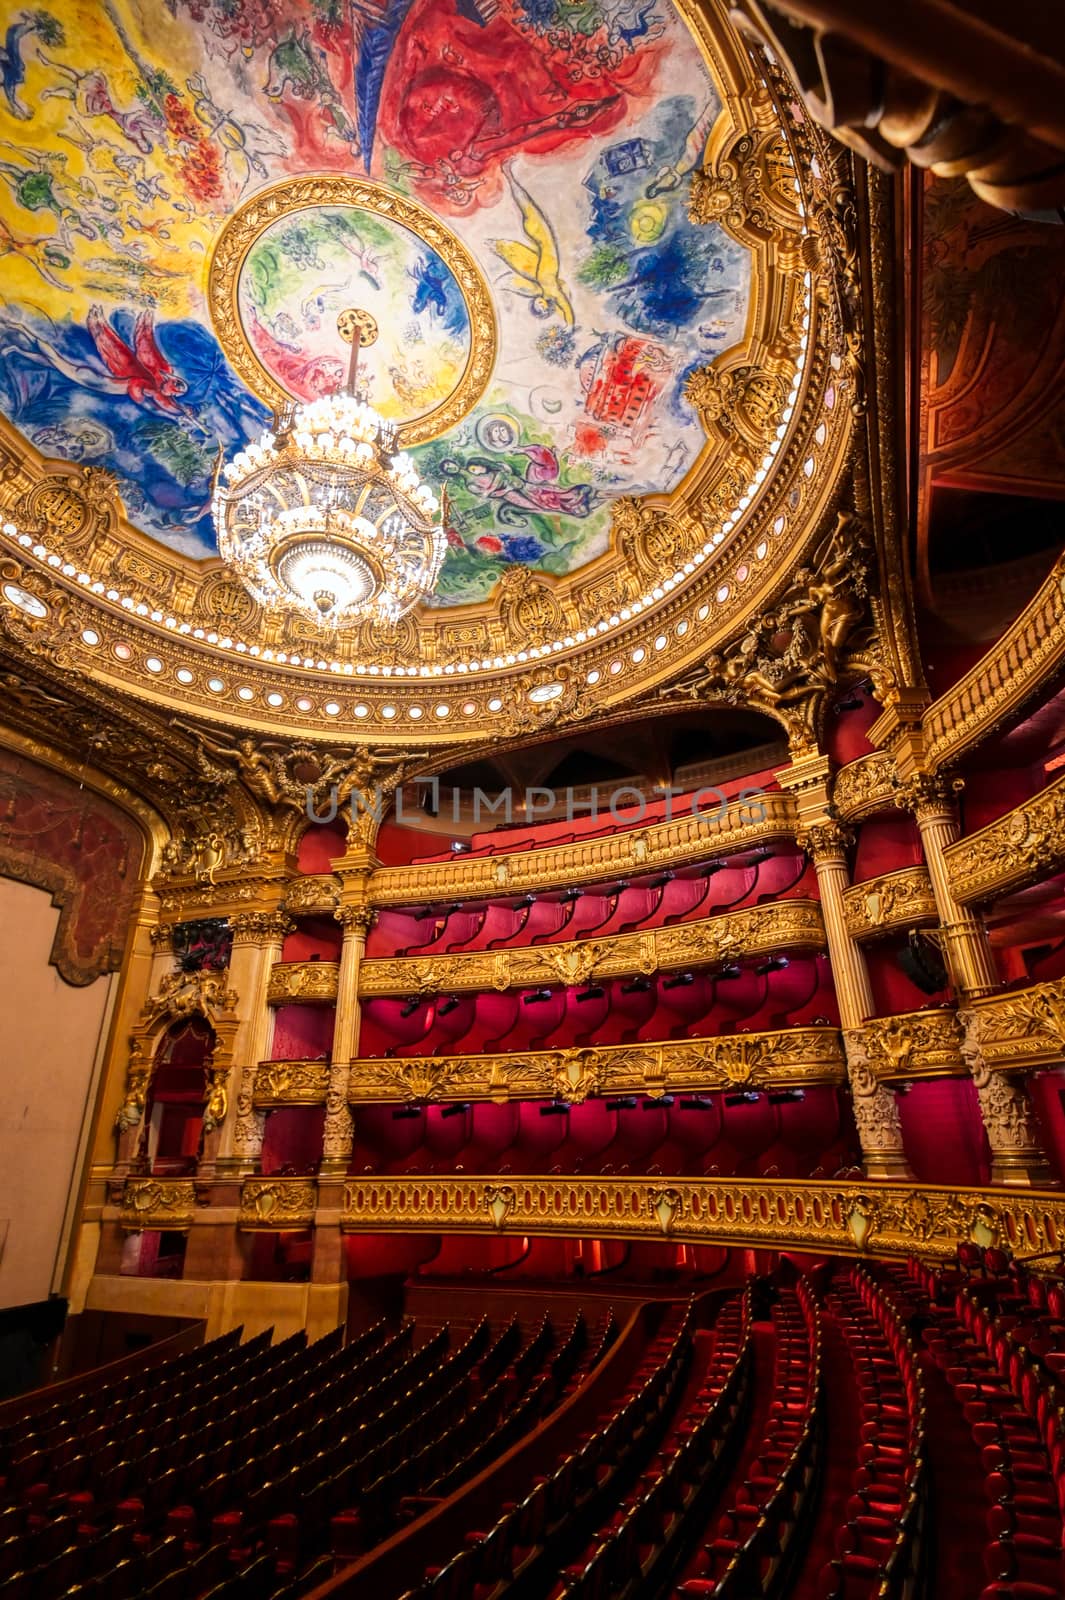 Paris, France - April 23, 2019 - The auditorium of the Palais Garnier located in Paris, France.